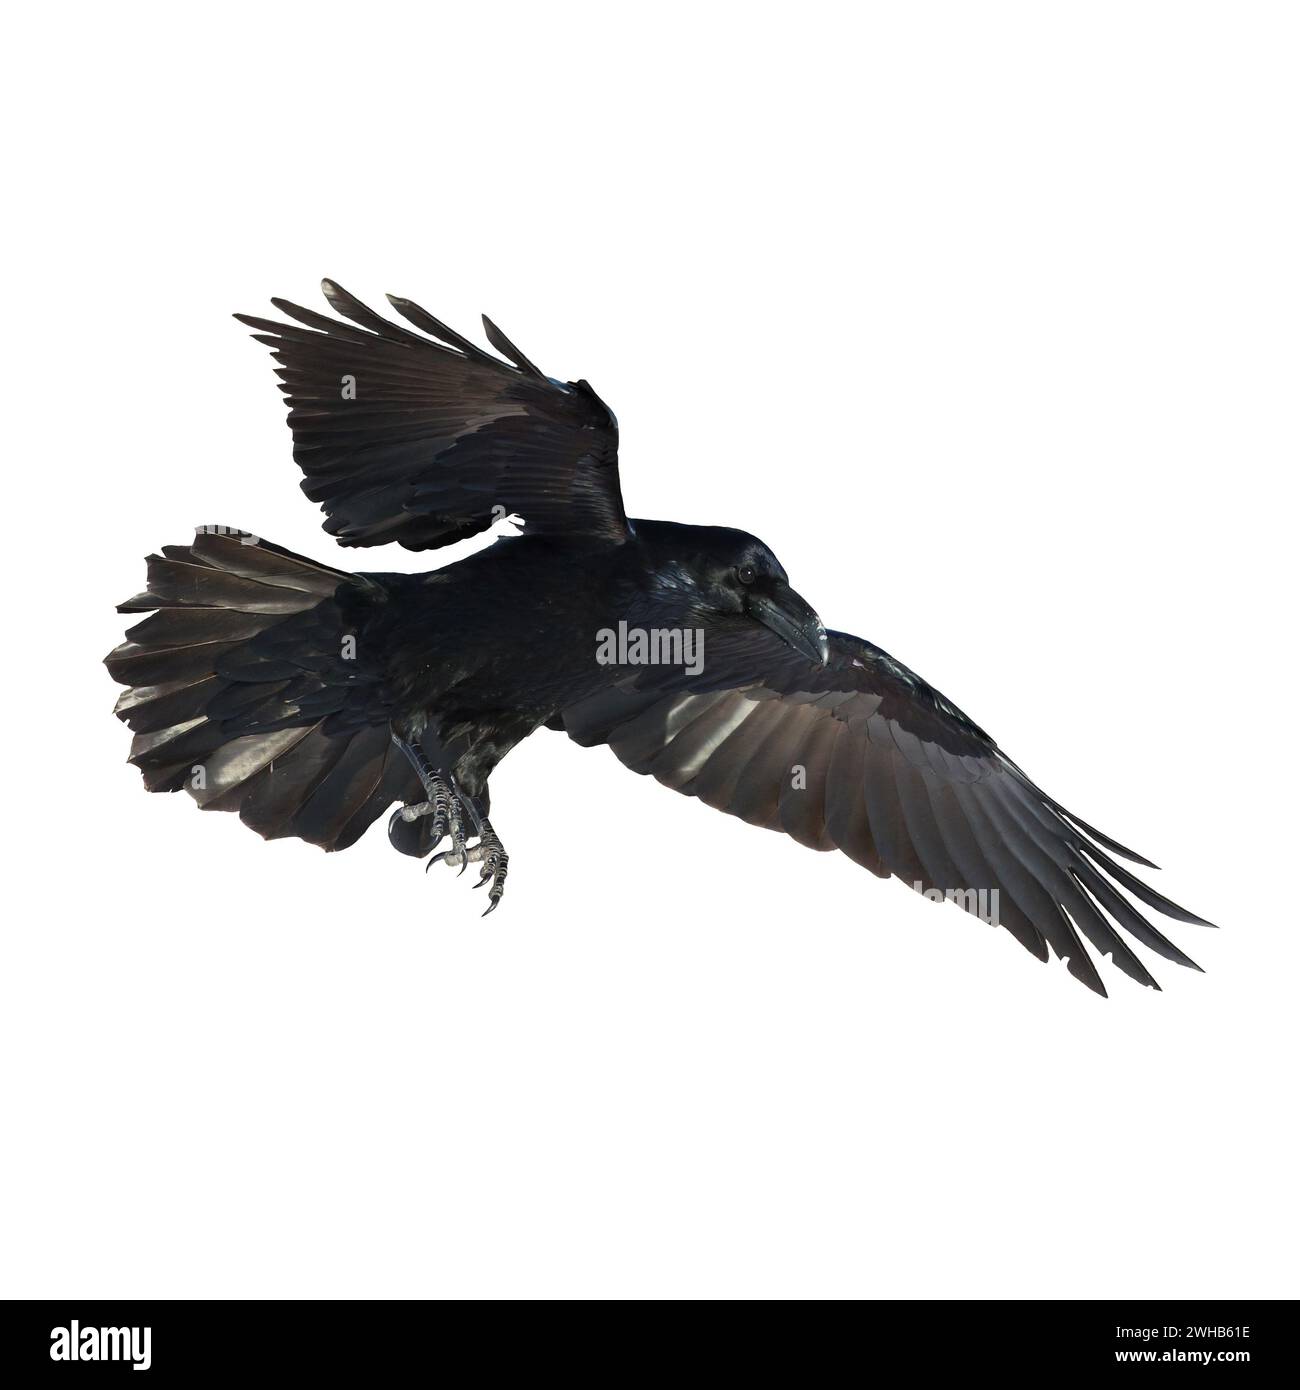 Vögel fliegen Raben isoliert auf weißem Hintergrund Corvus corax. Halloween, Silhouette eines großen schwarzen Vogels im Flug Stockfoto